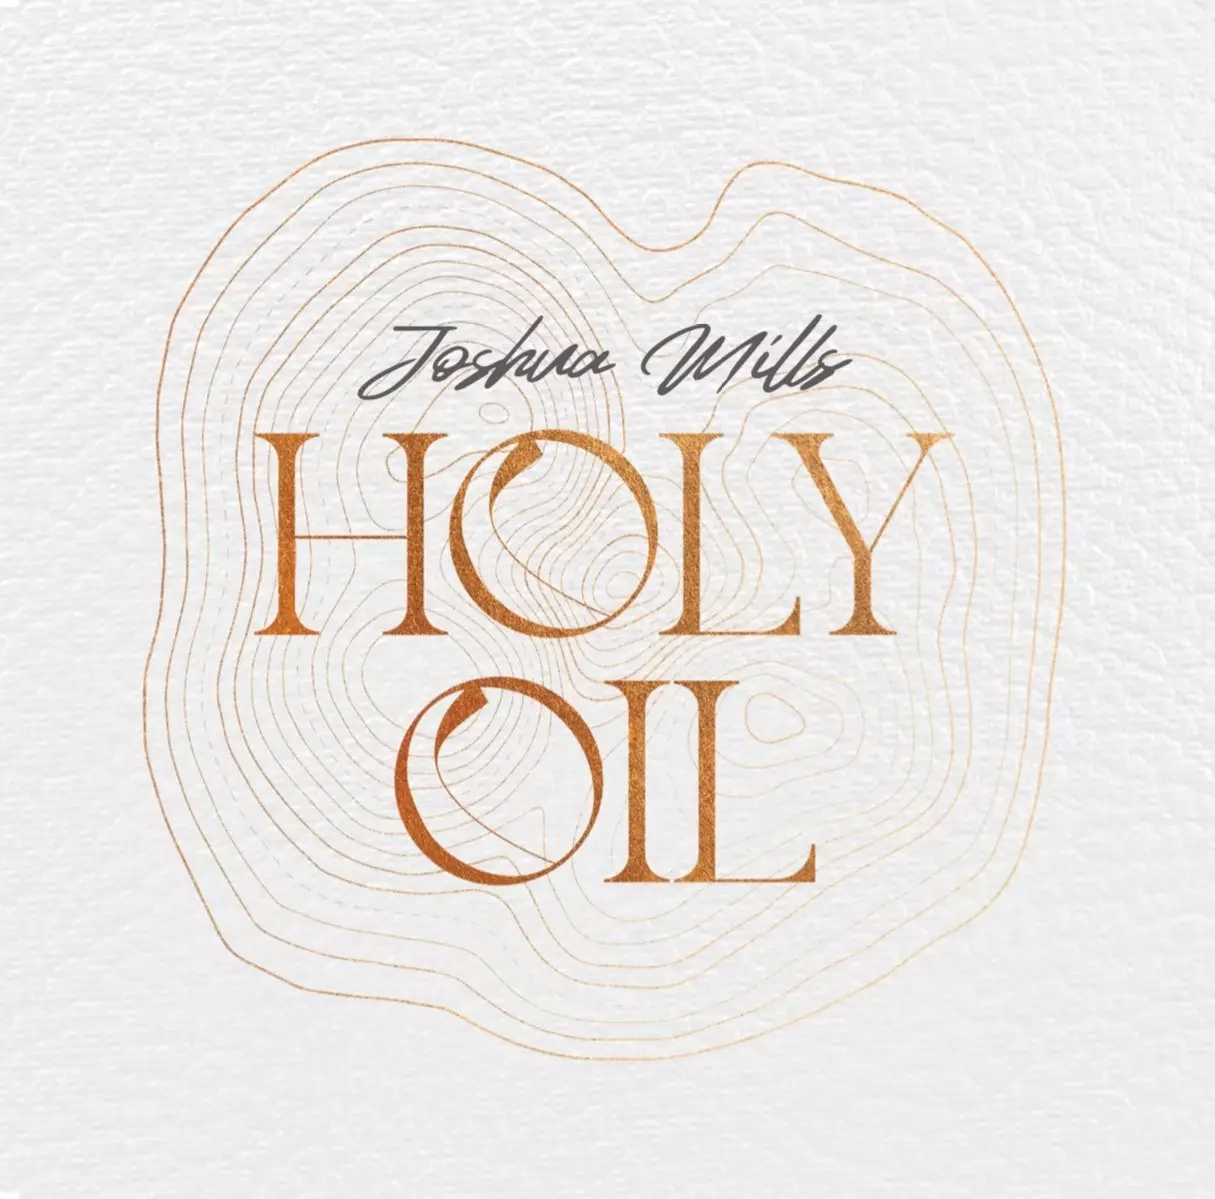 Audio CD-Holy Oil